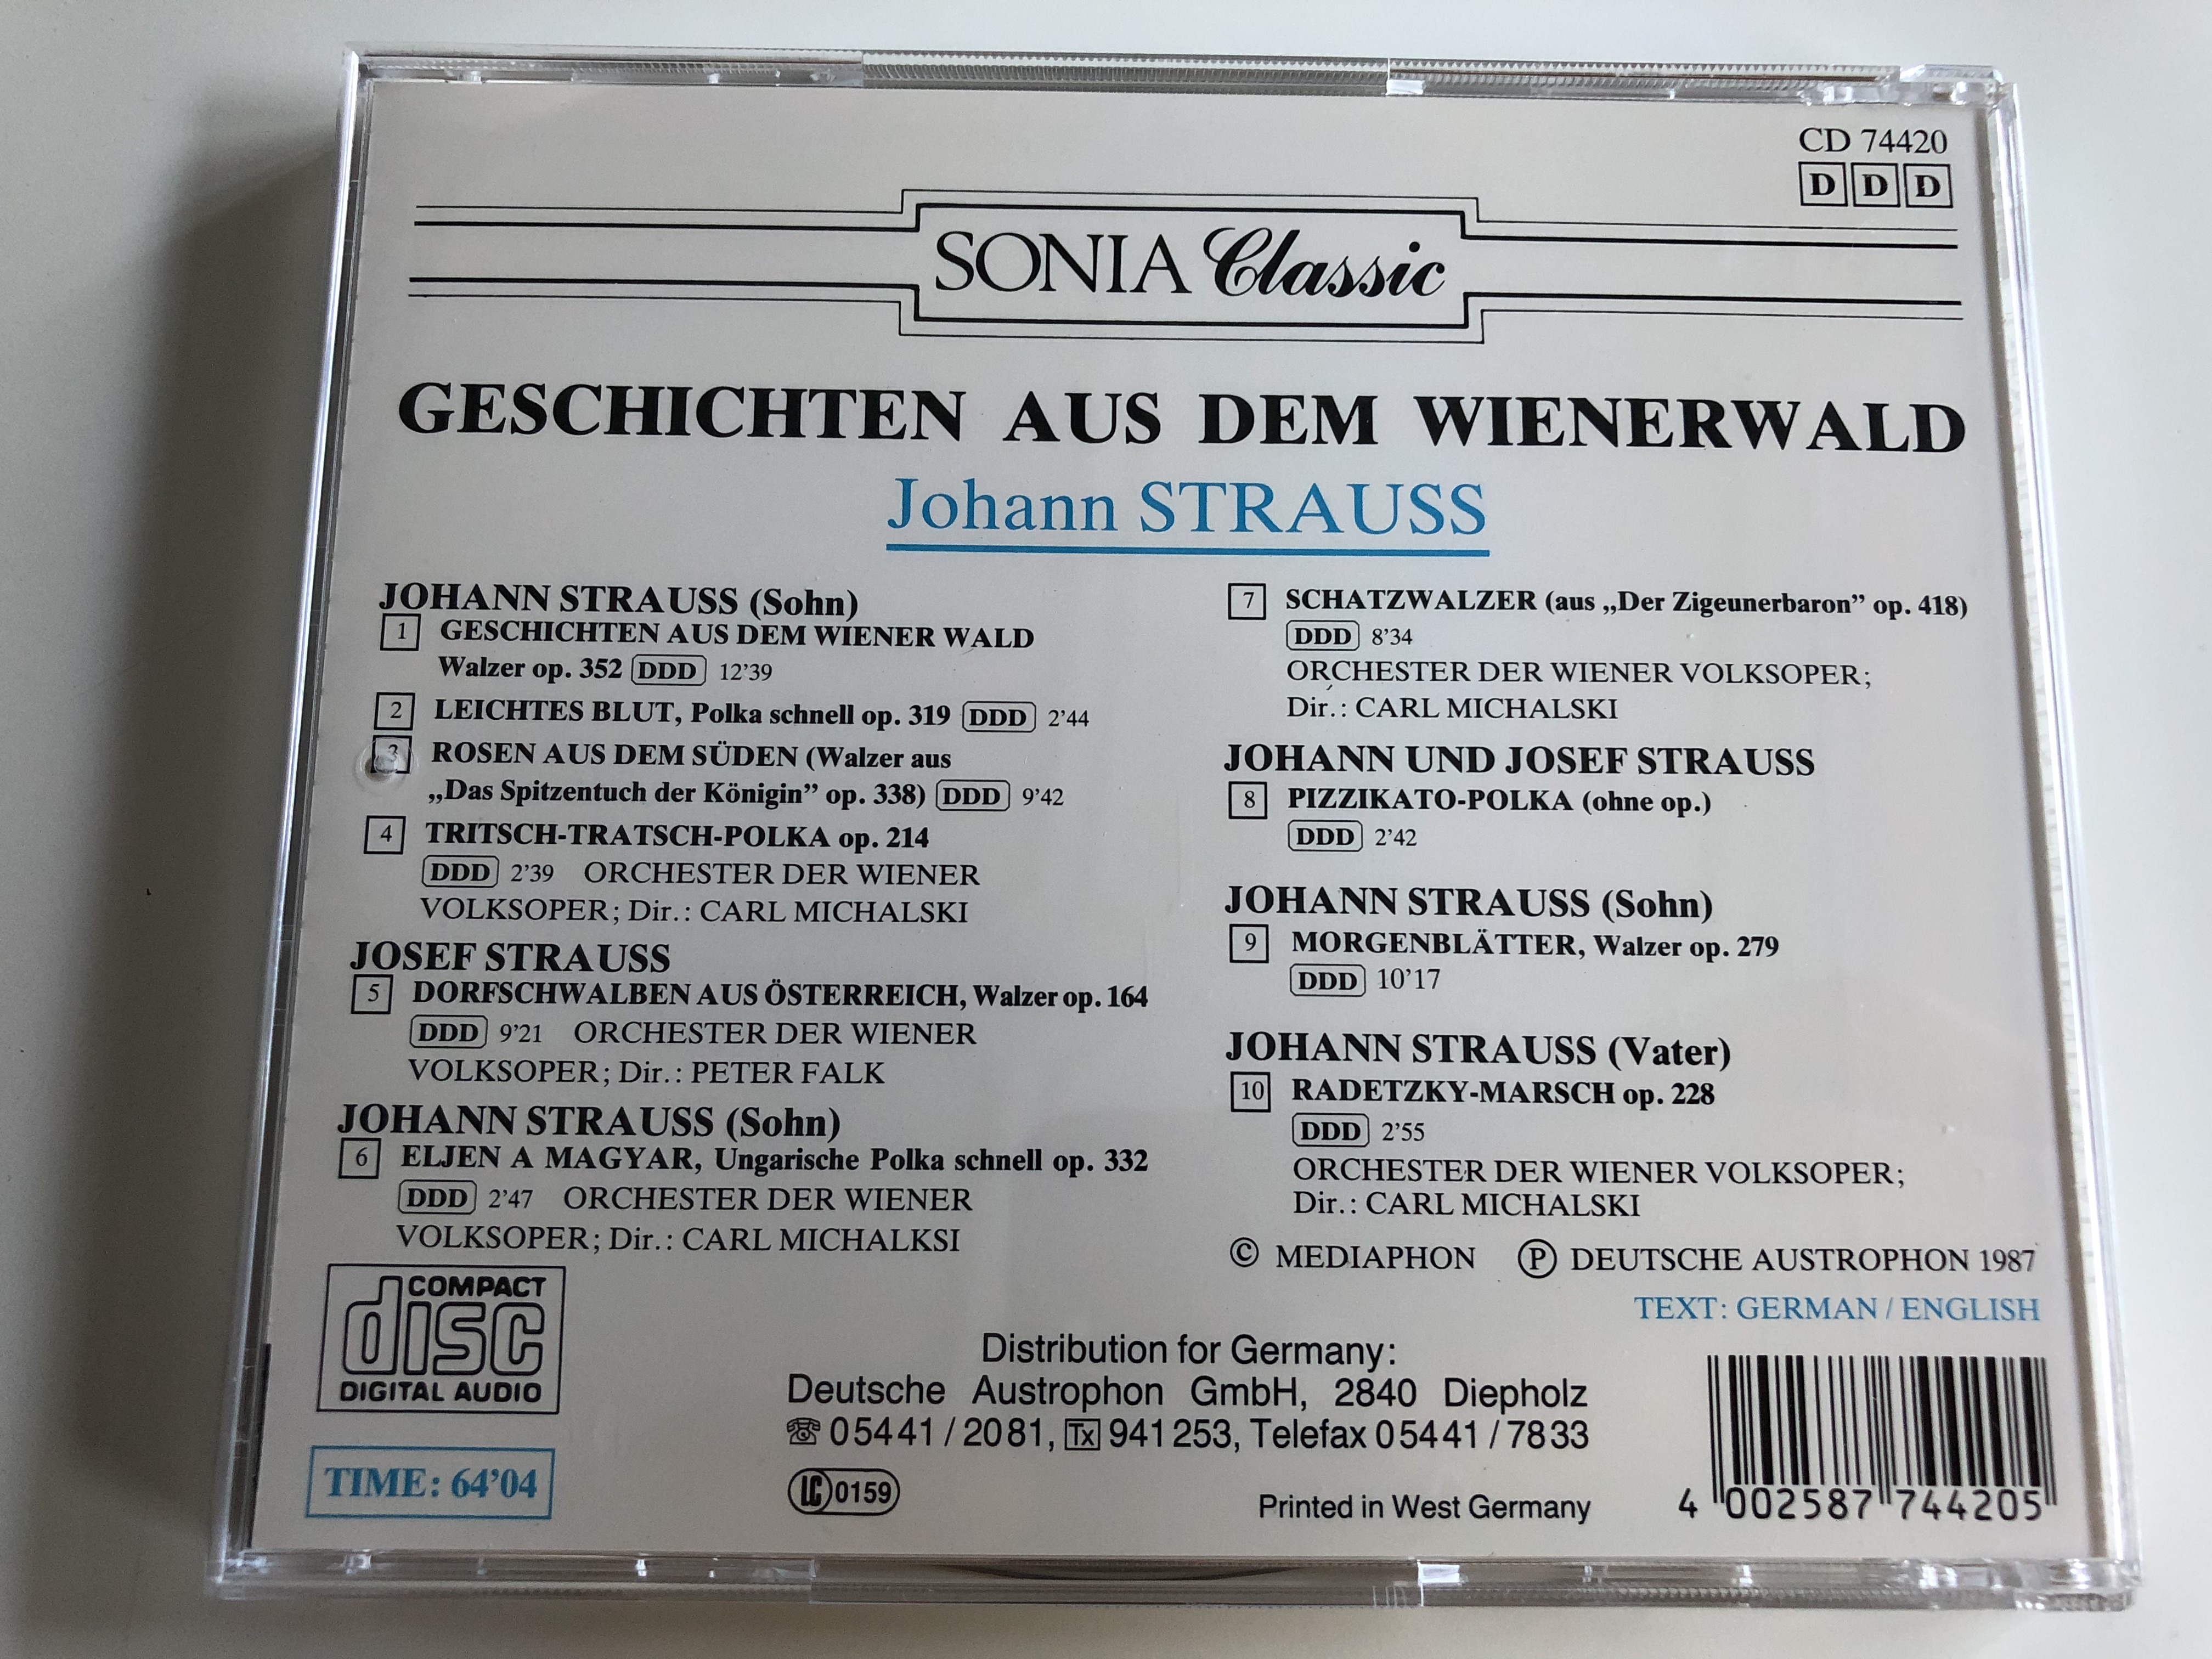 johann-strauss-geschichten-aus-dem-wiener-wald-leichtes-blut-rosen-aus-dem-s-den-tritsch-tratsch-ljen-a-magyar-orchester-de-wiener-volksoper-conducted-by-peter-falk-carl-michalski-audio-cd-6-.jpg